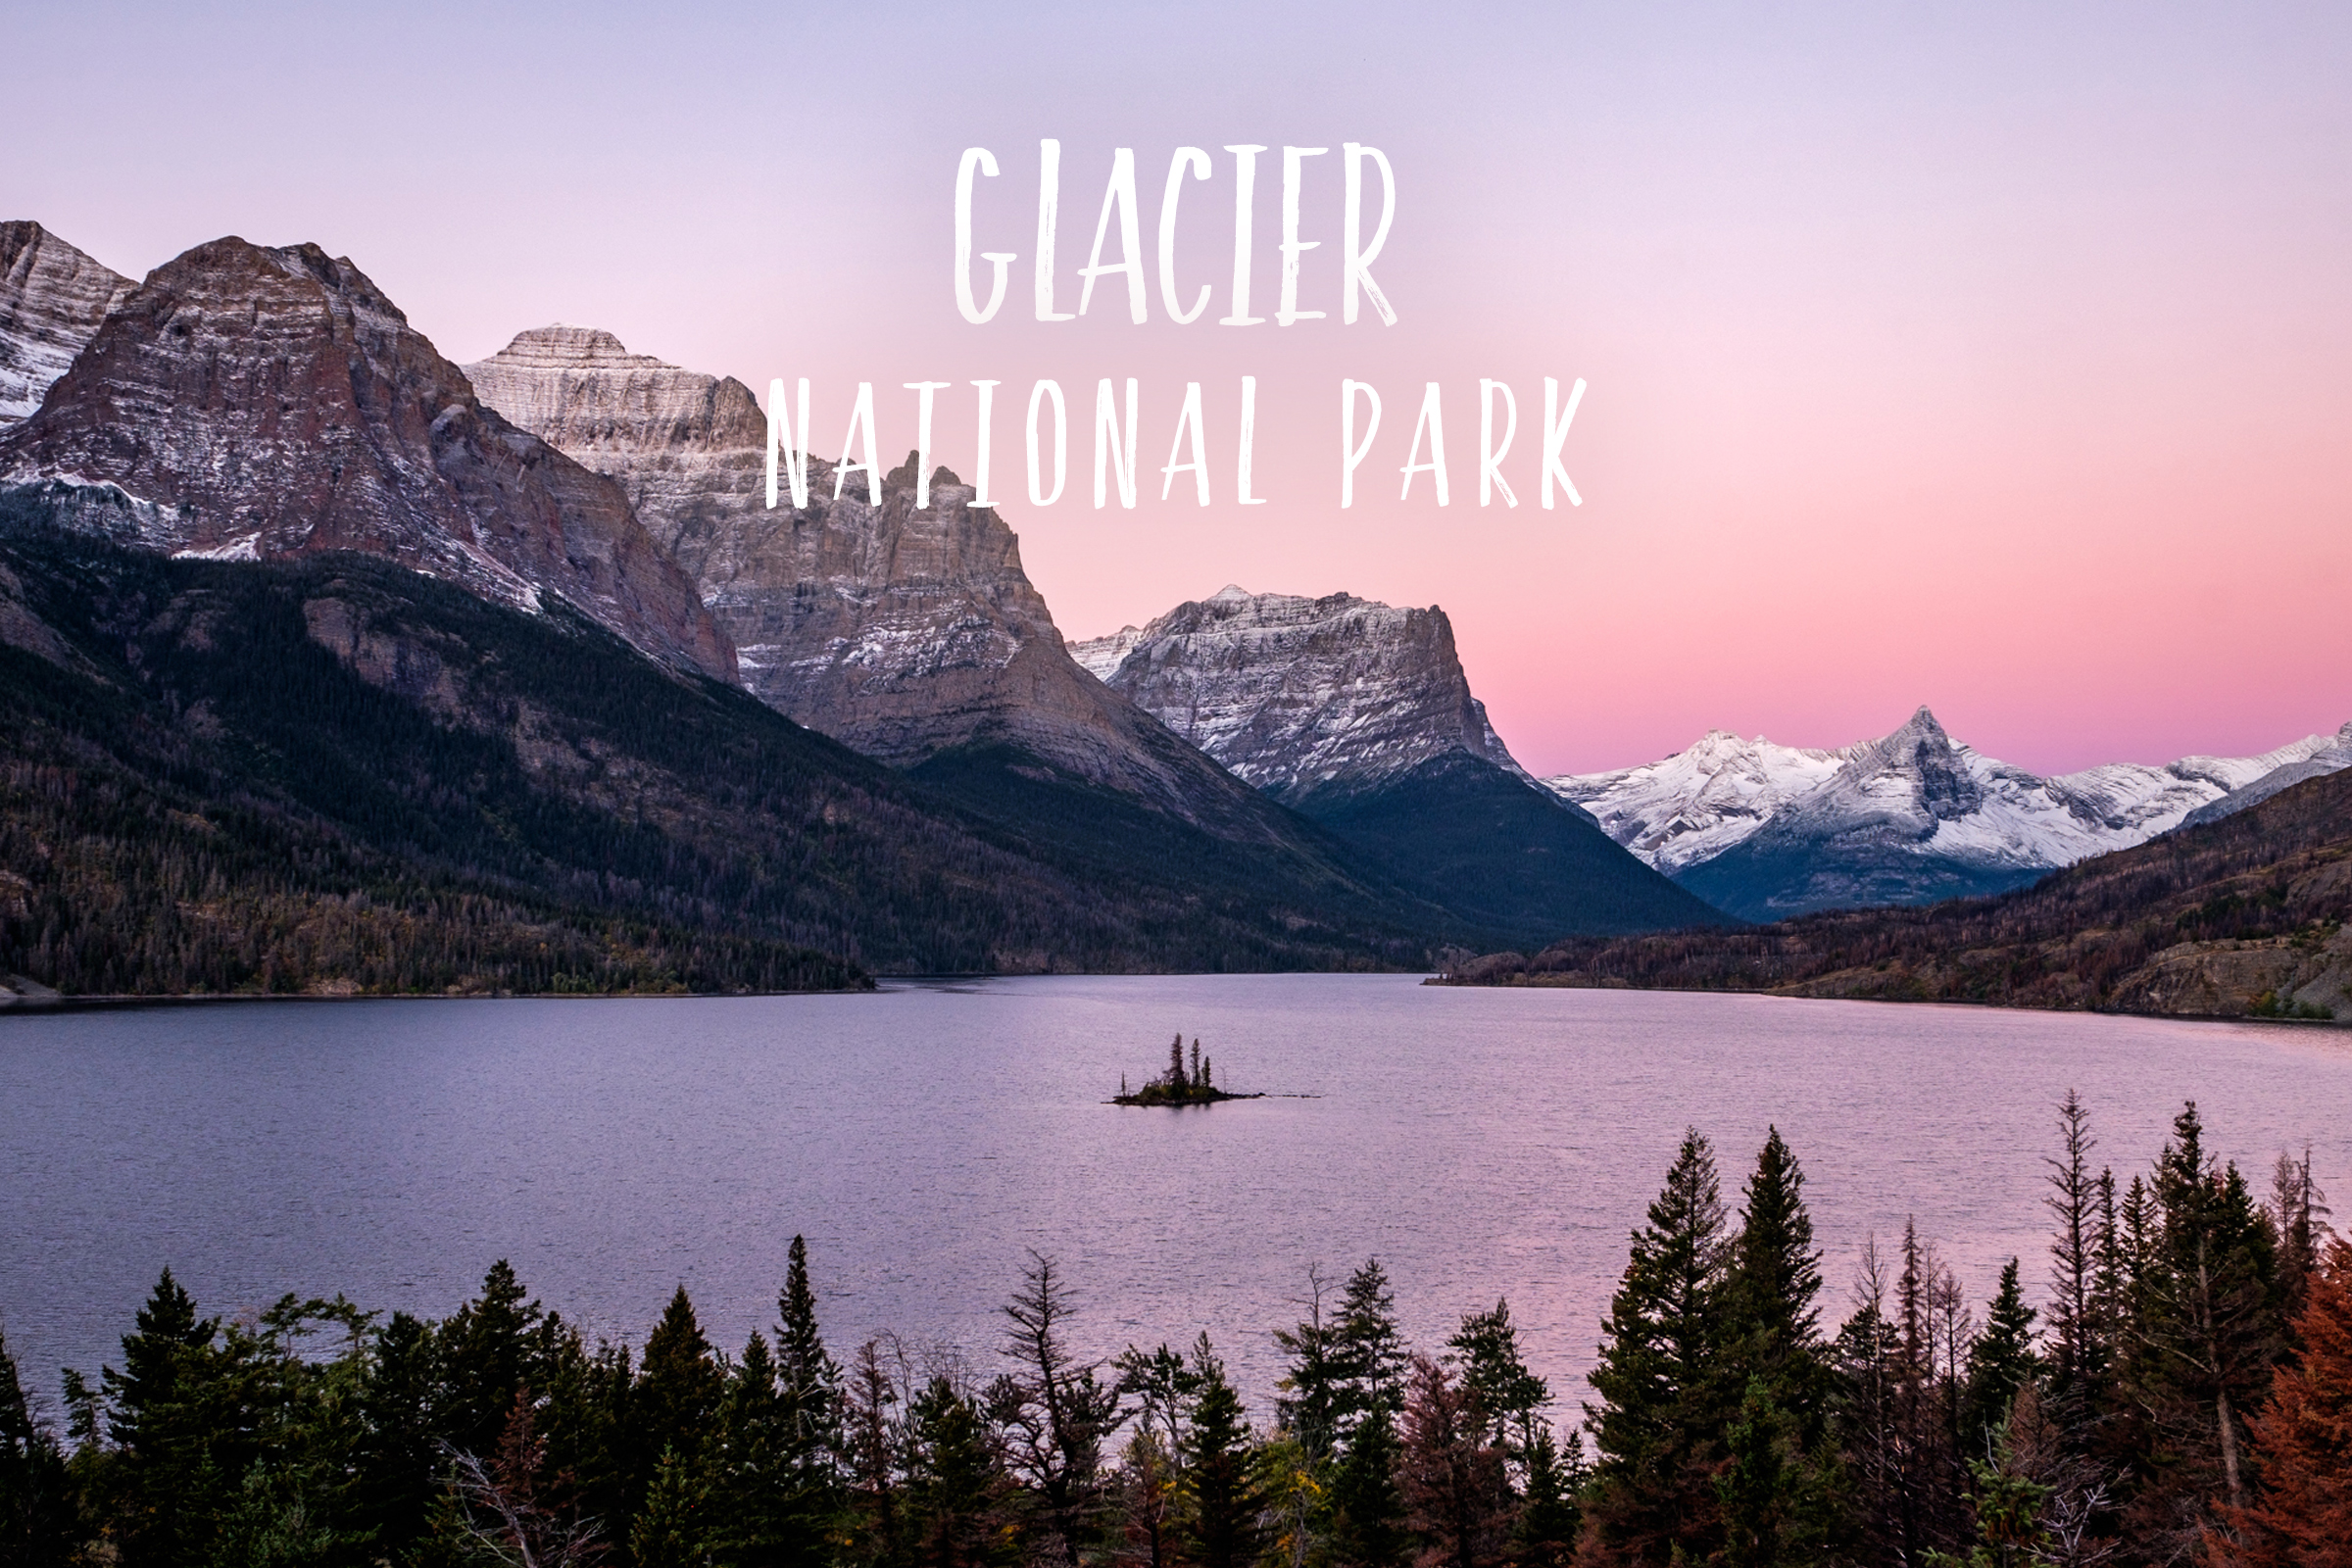 Park 40/59: Glacier National Park in Montana